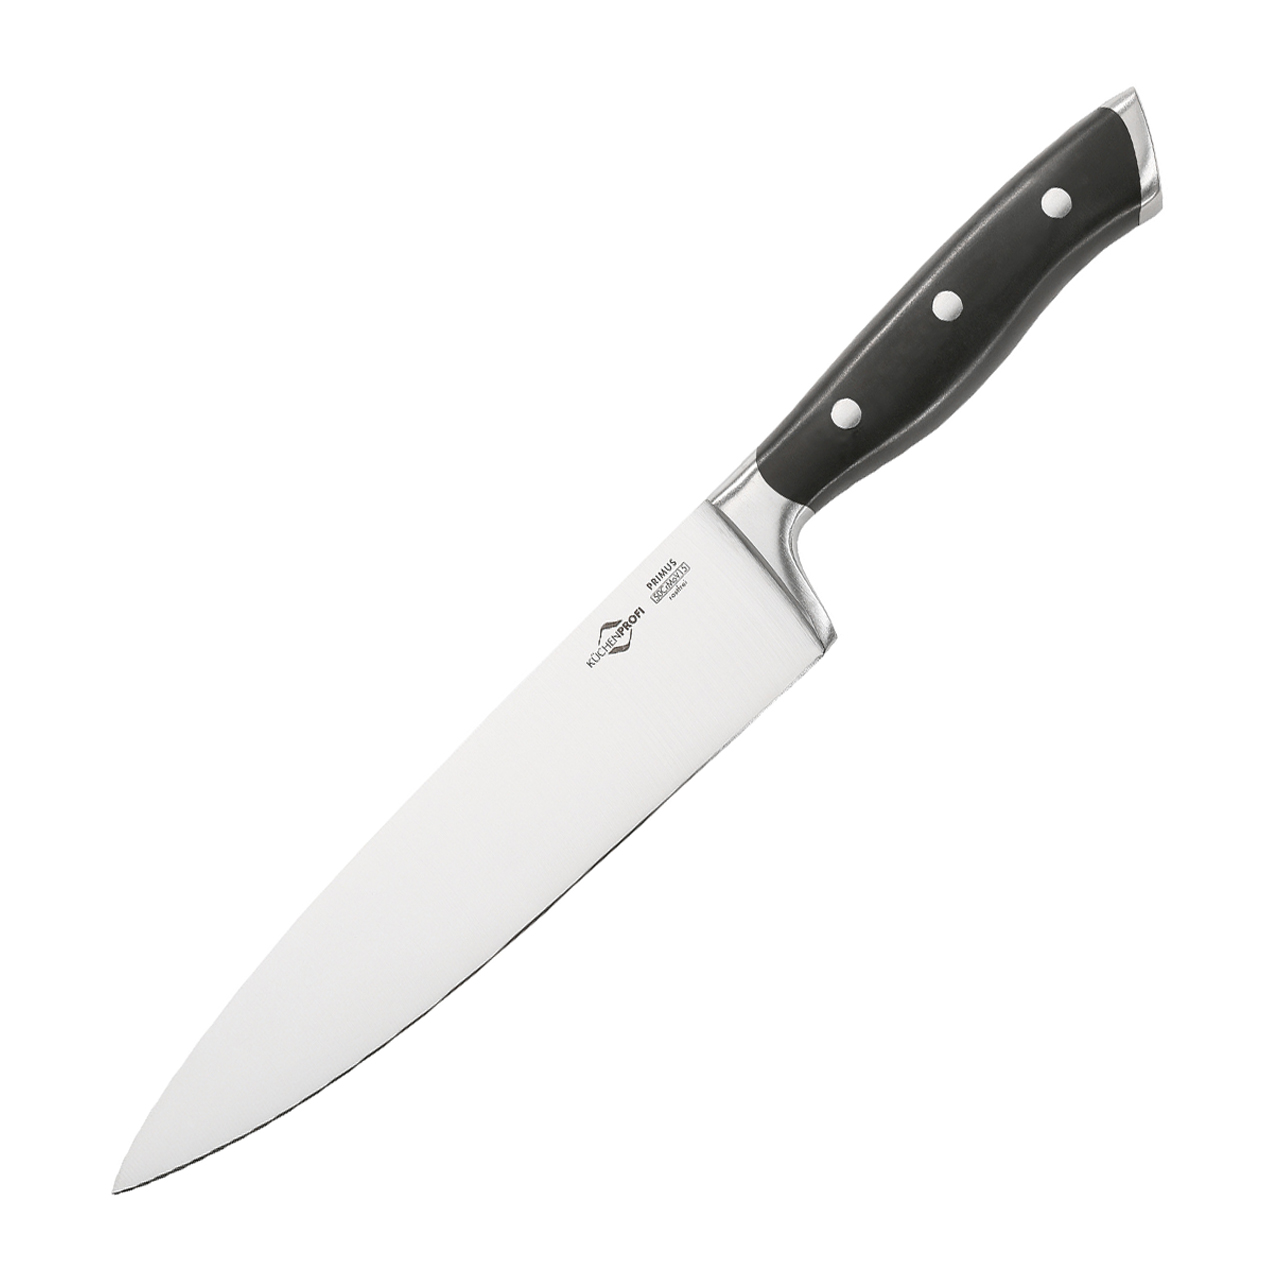  چاقو آشپزخانه کوچن پروفی مدل PRIMUS کد 1282